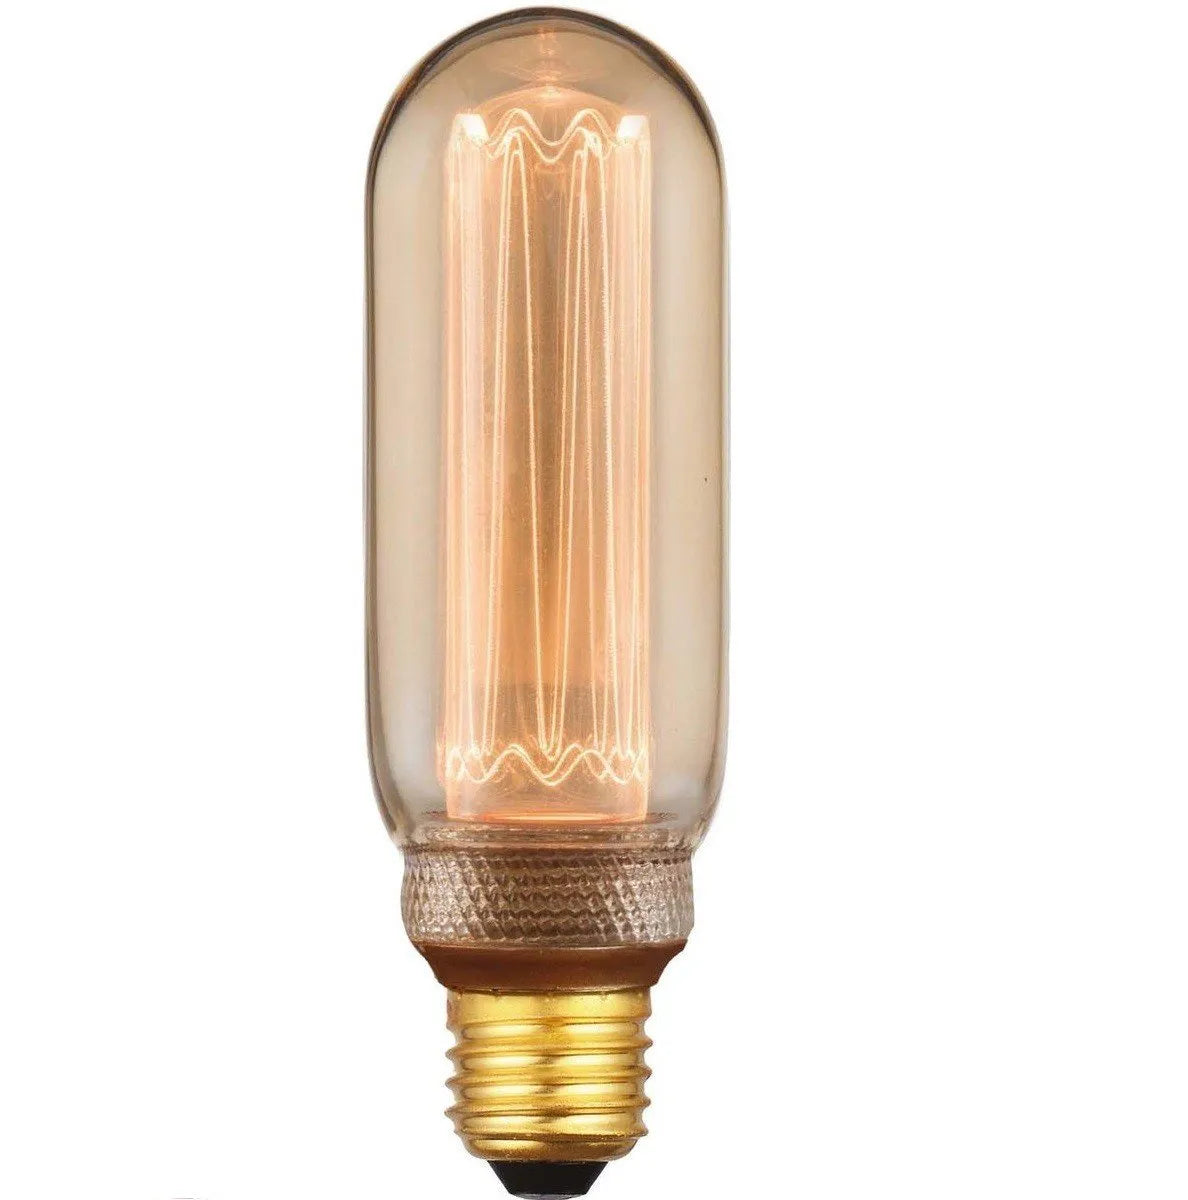 Ampoule ByEve - LED Filament E